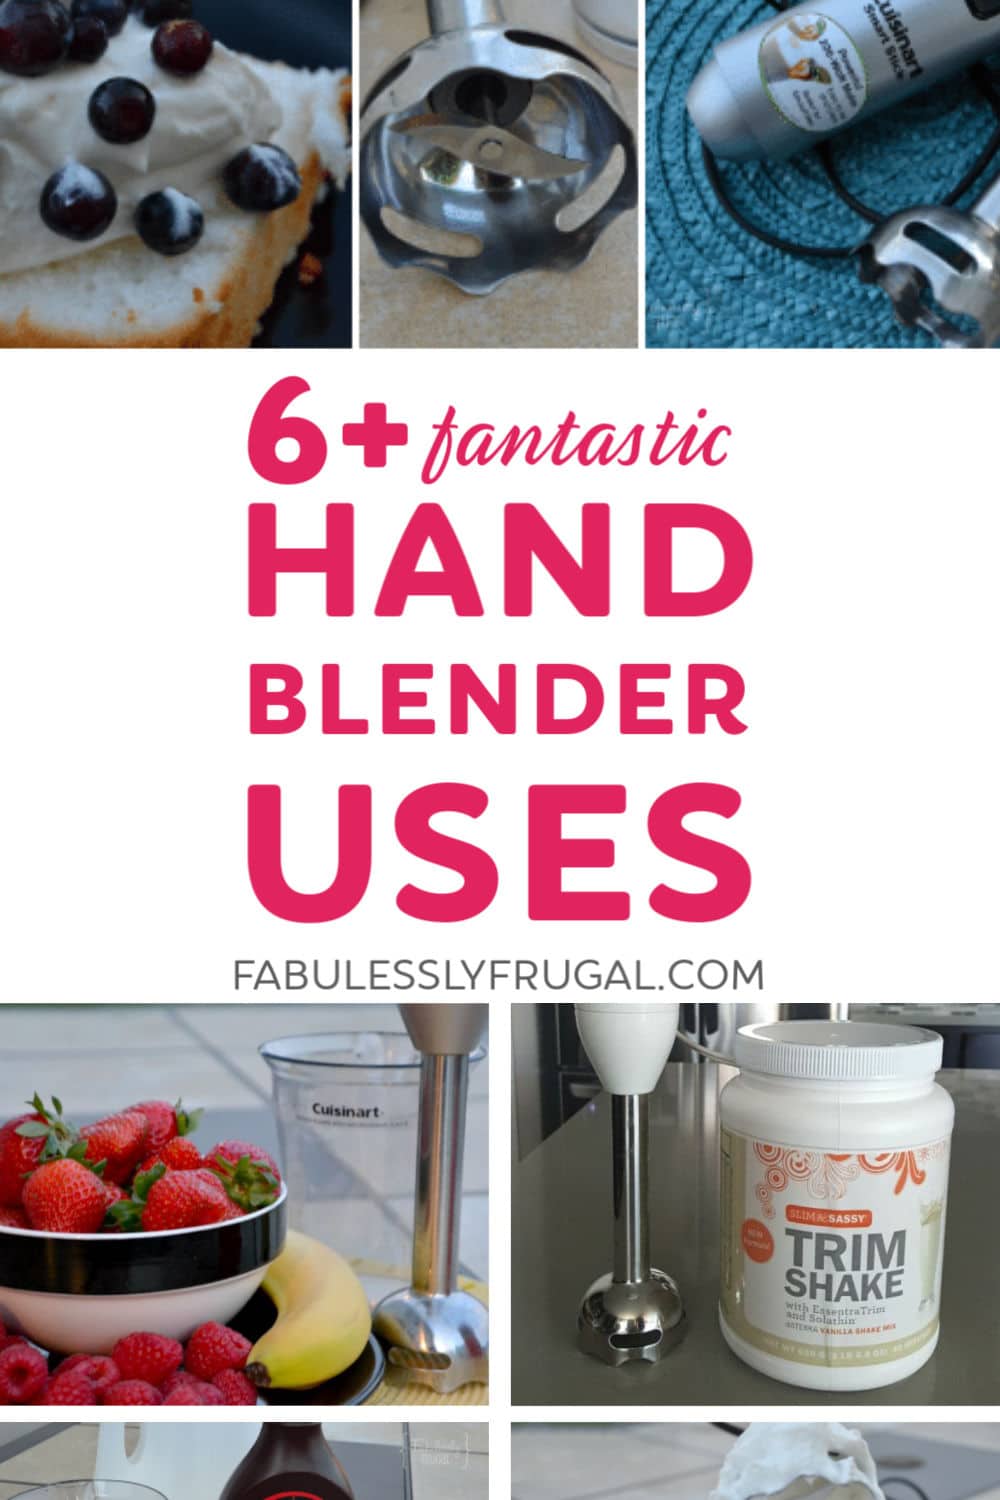 Hand blender uses